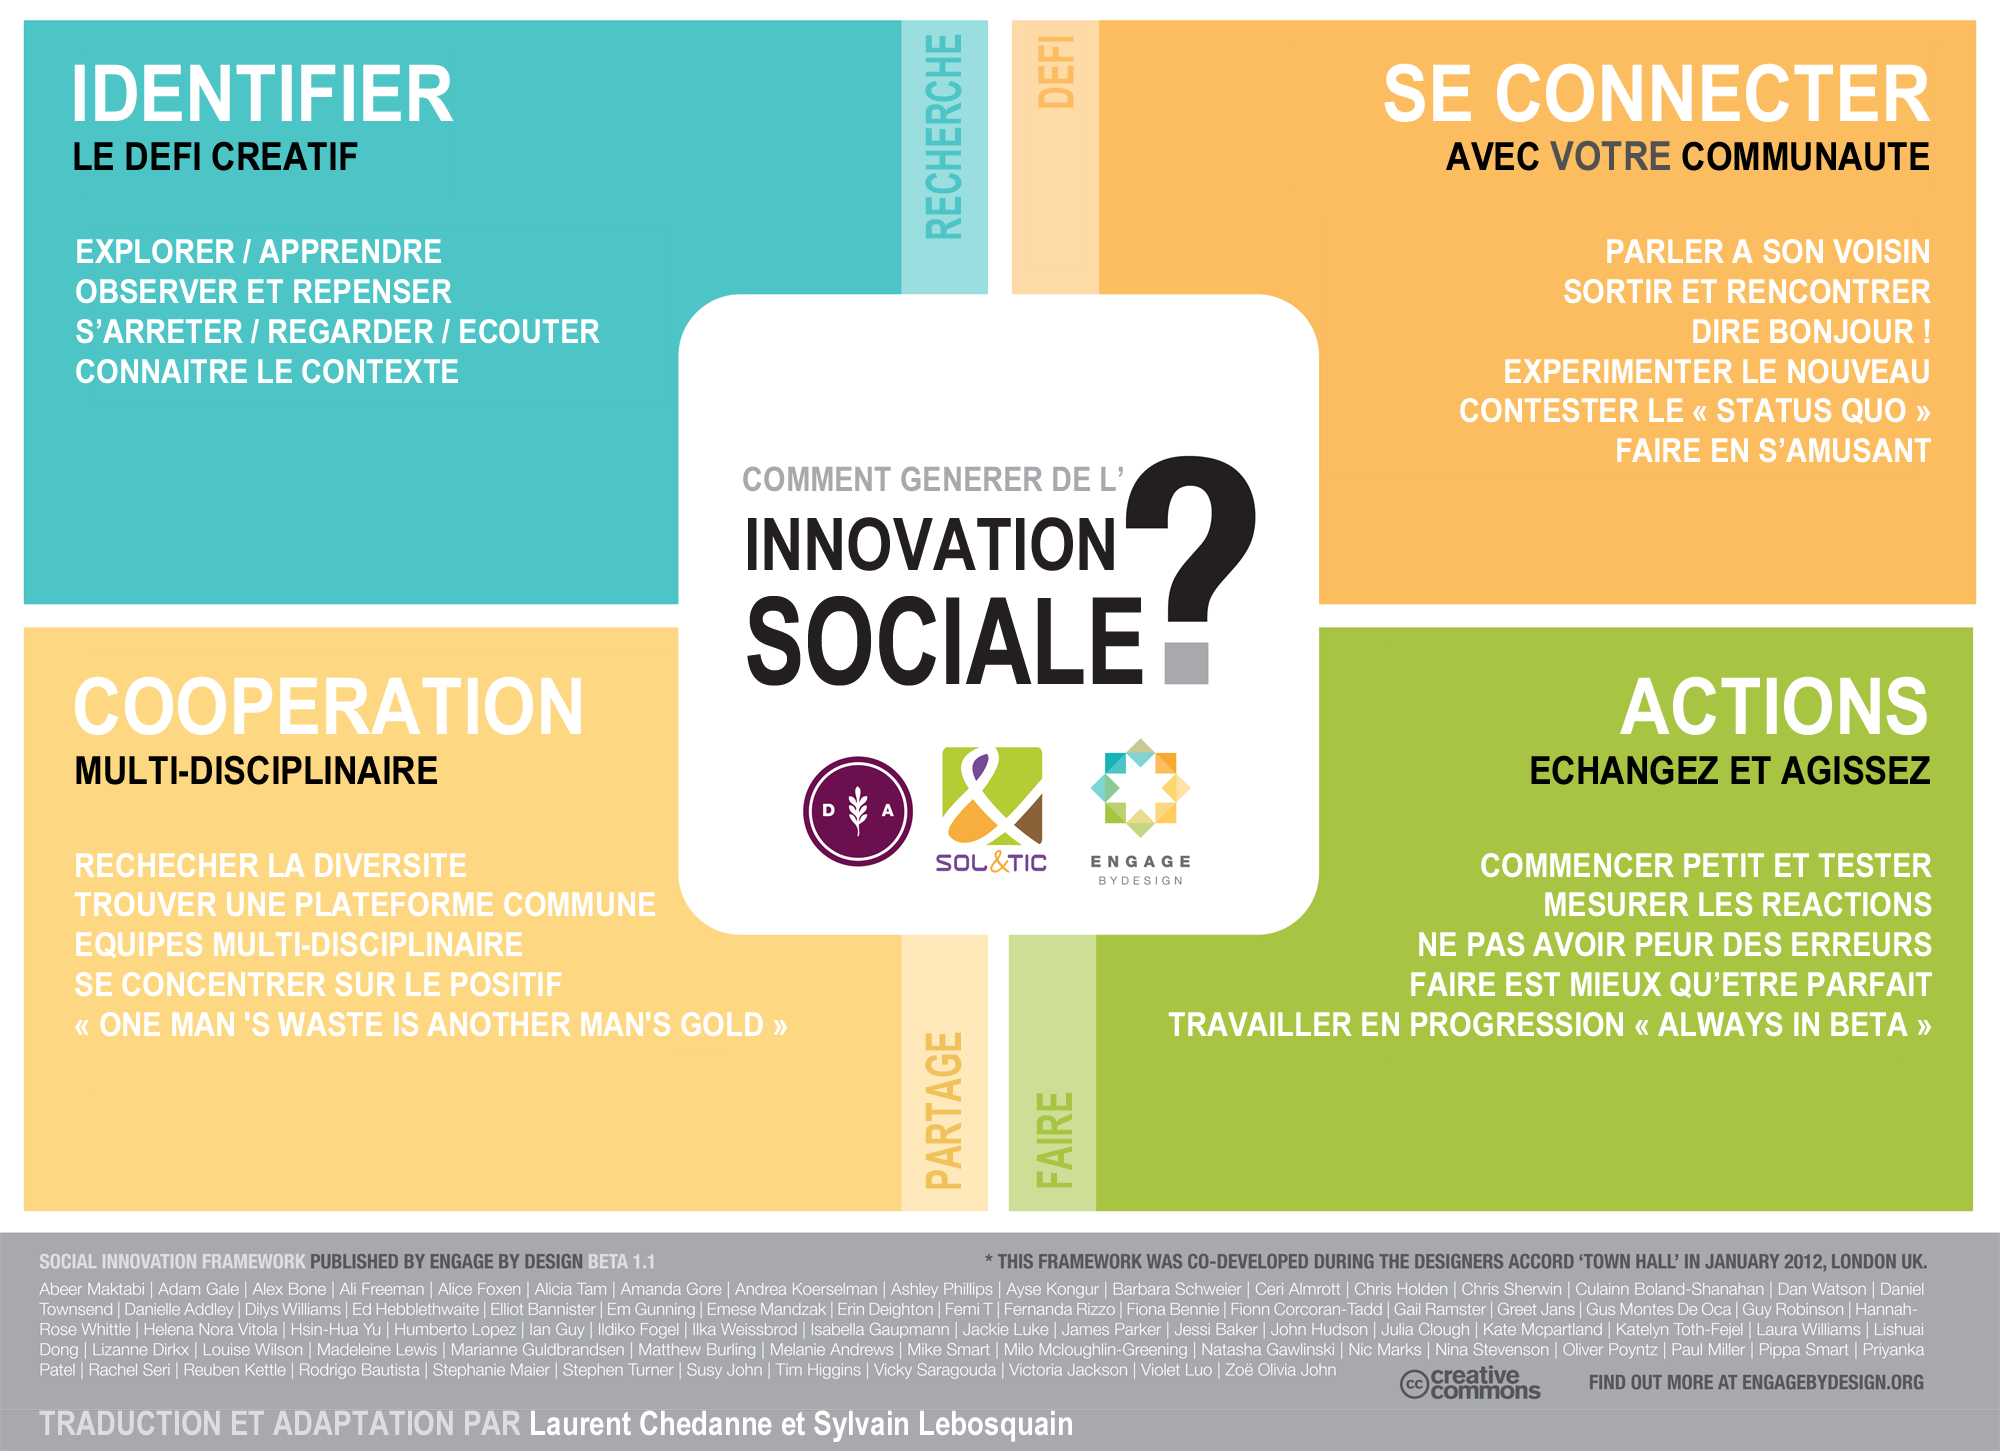 Comment générer de l'innovation sociale